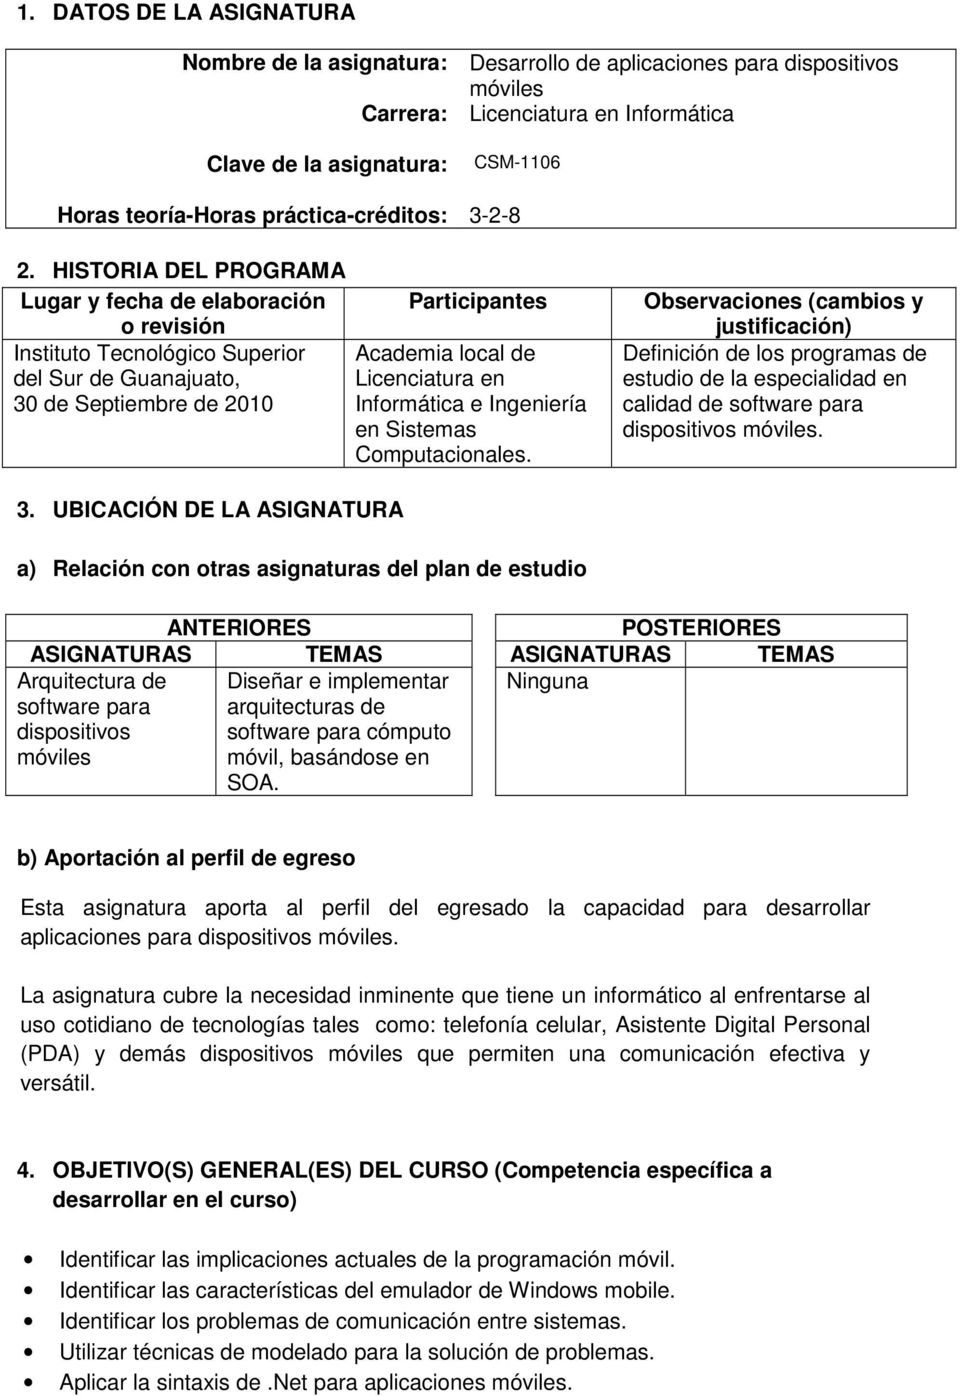 HISTORIA DEL PROGRAMA Lugar y fecha de elaboración o revisión Instituto Tecnológico Superior del Sur de Guanajuato, 30 de Septiembre de 2010 Participantes Academia local de Licenciatura en